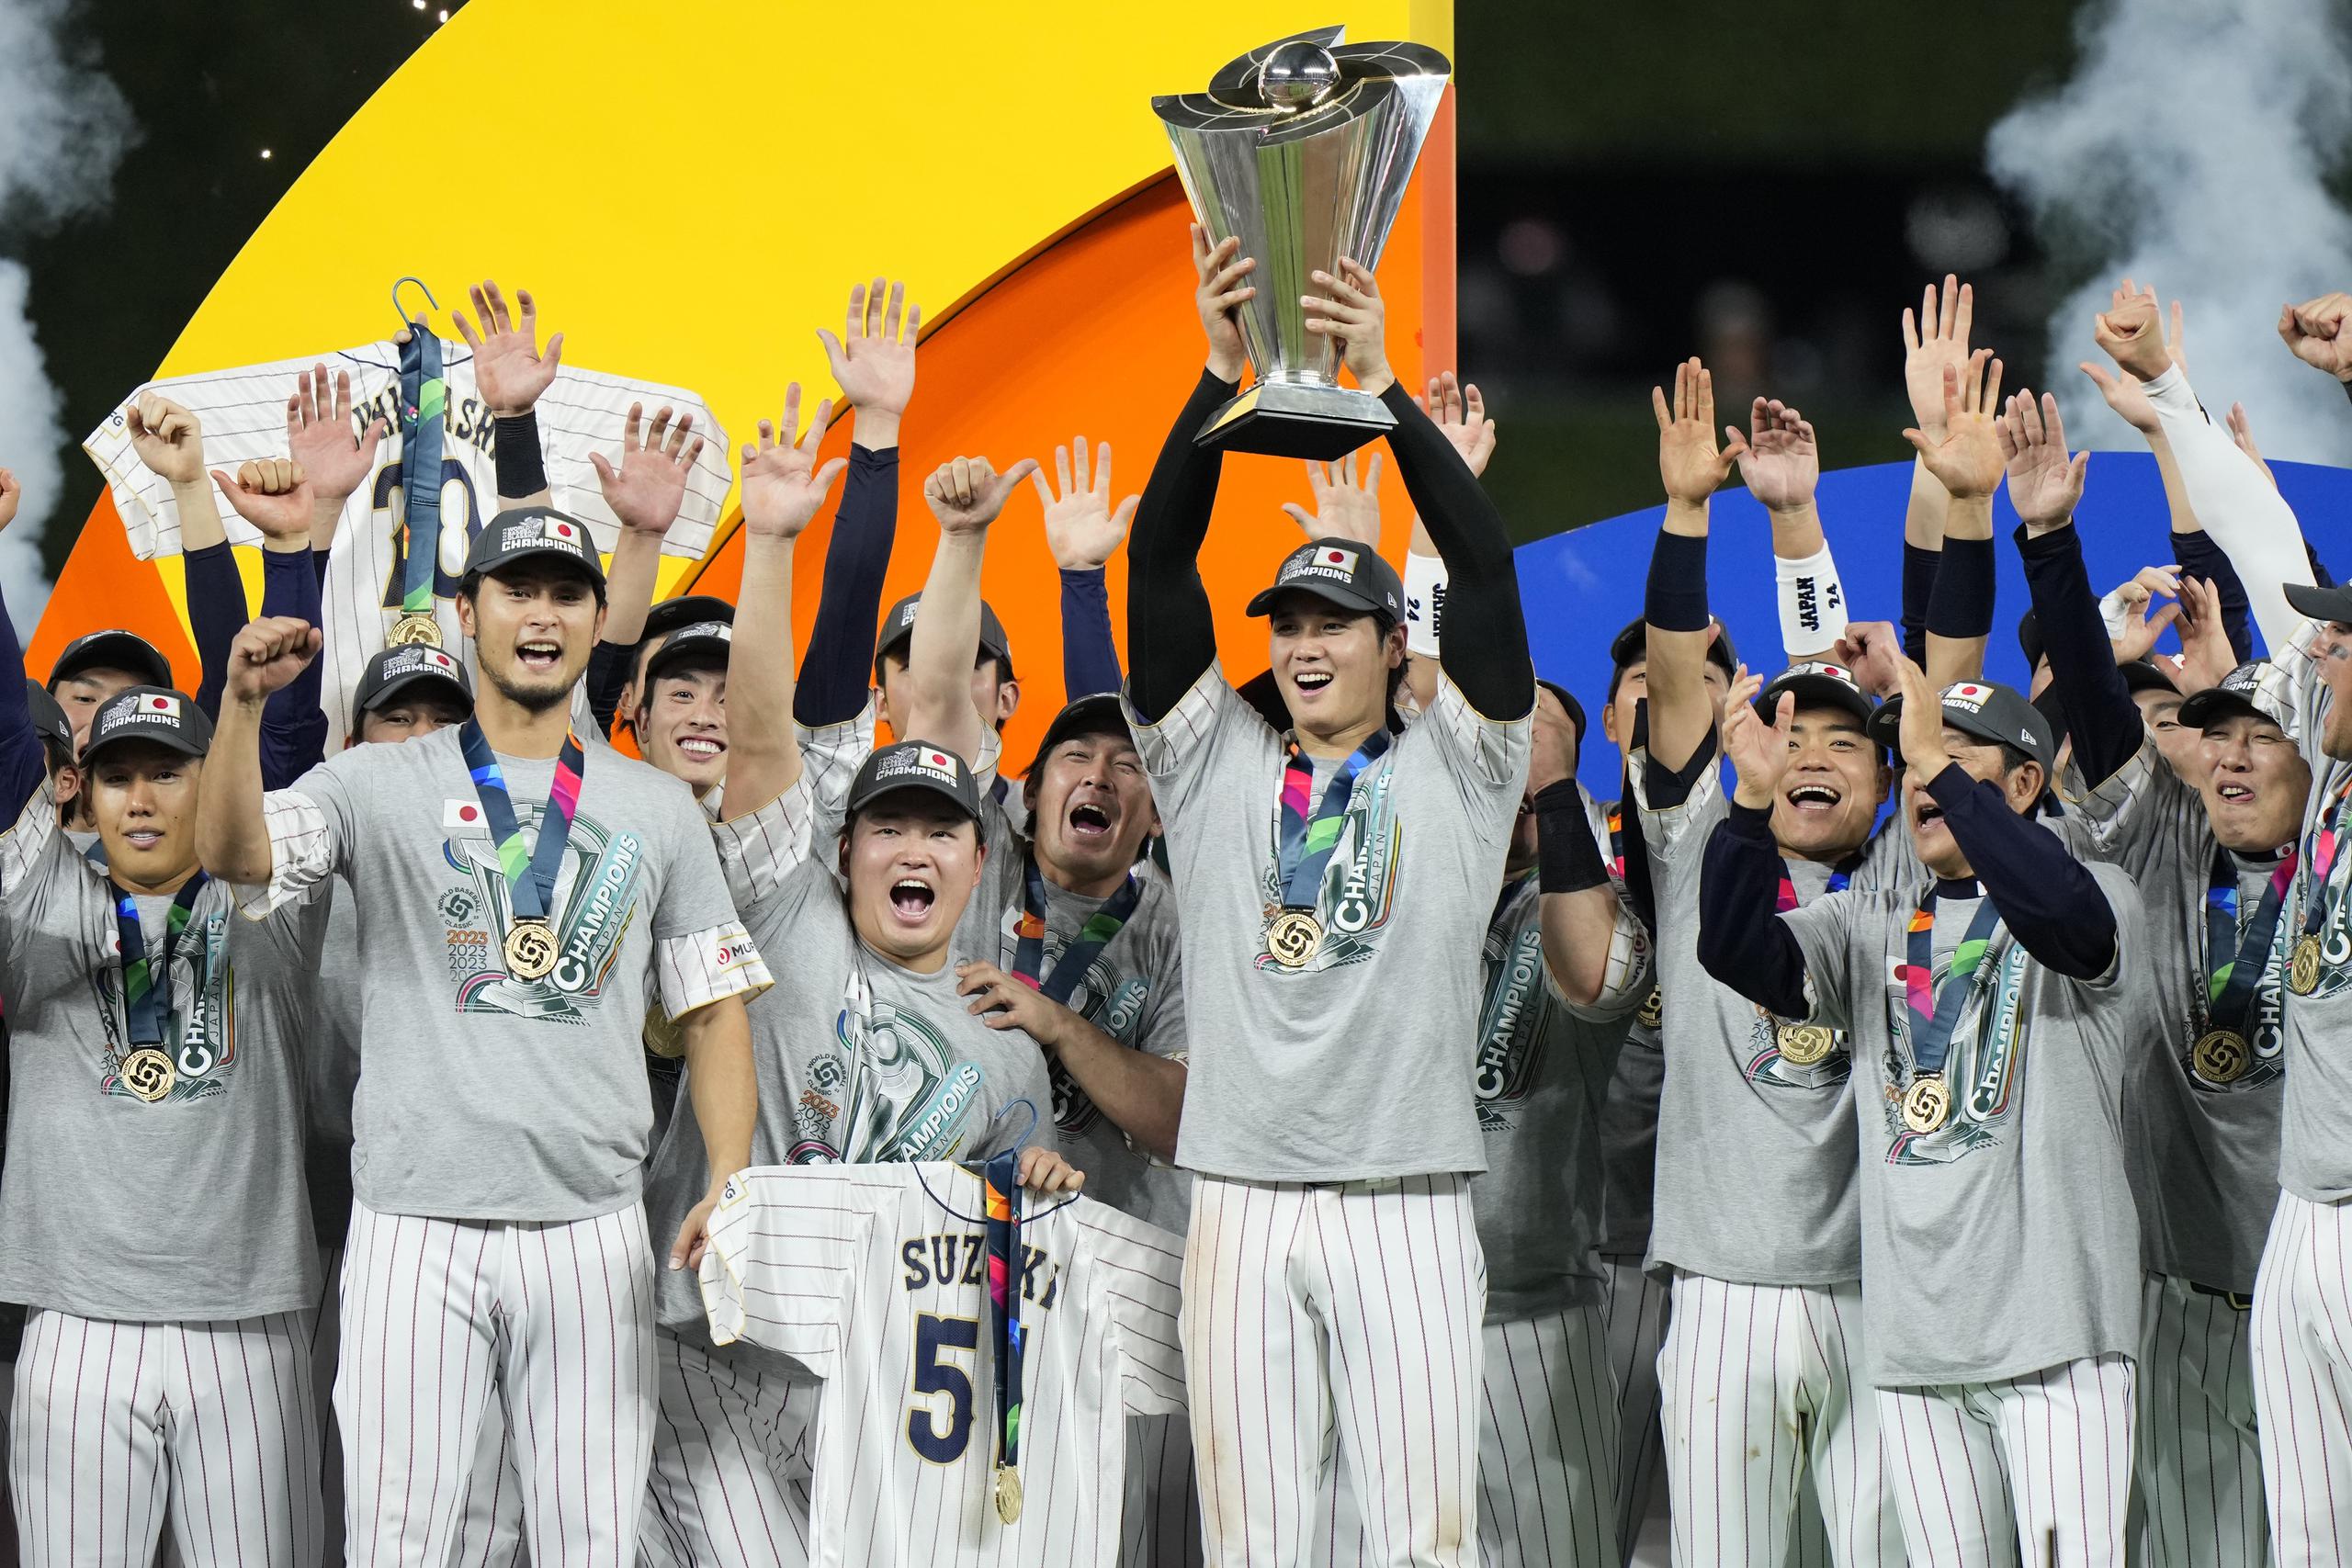 El lanzador Shohei Ohtani, Jugador Más Valioso de la final del Clásico Mundial de Béisbol, levanta el trofeo de campeón rodeado de sus compañeros del equipo de Japón.